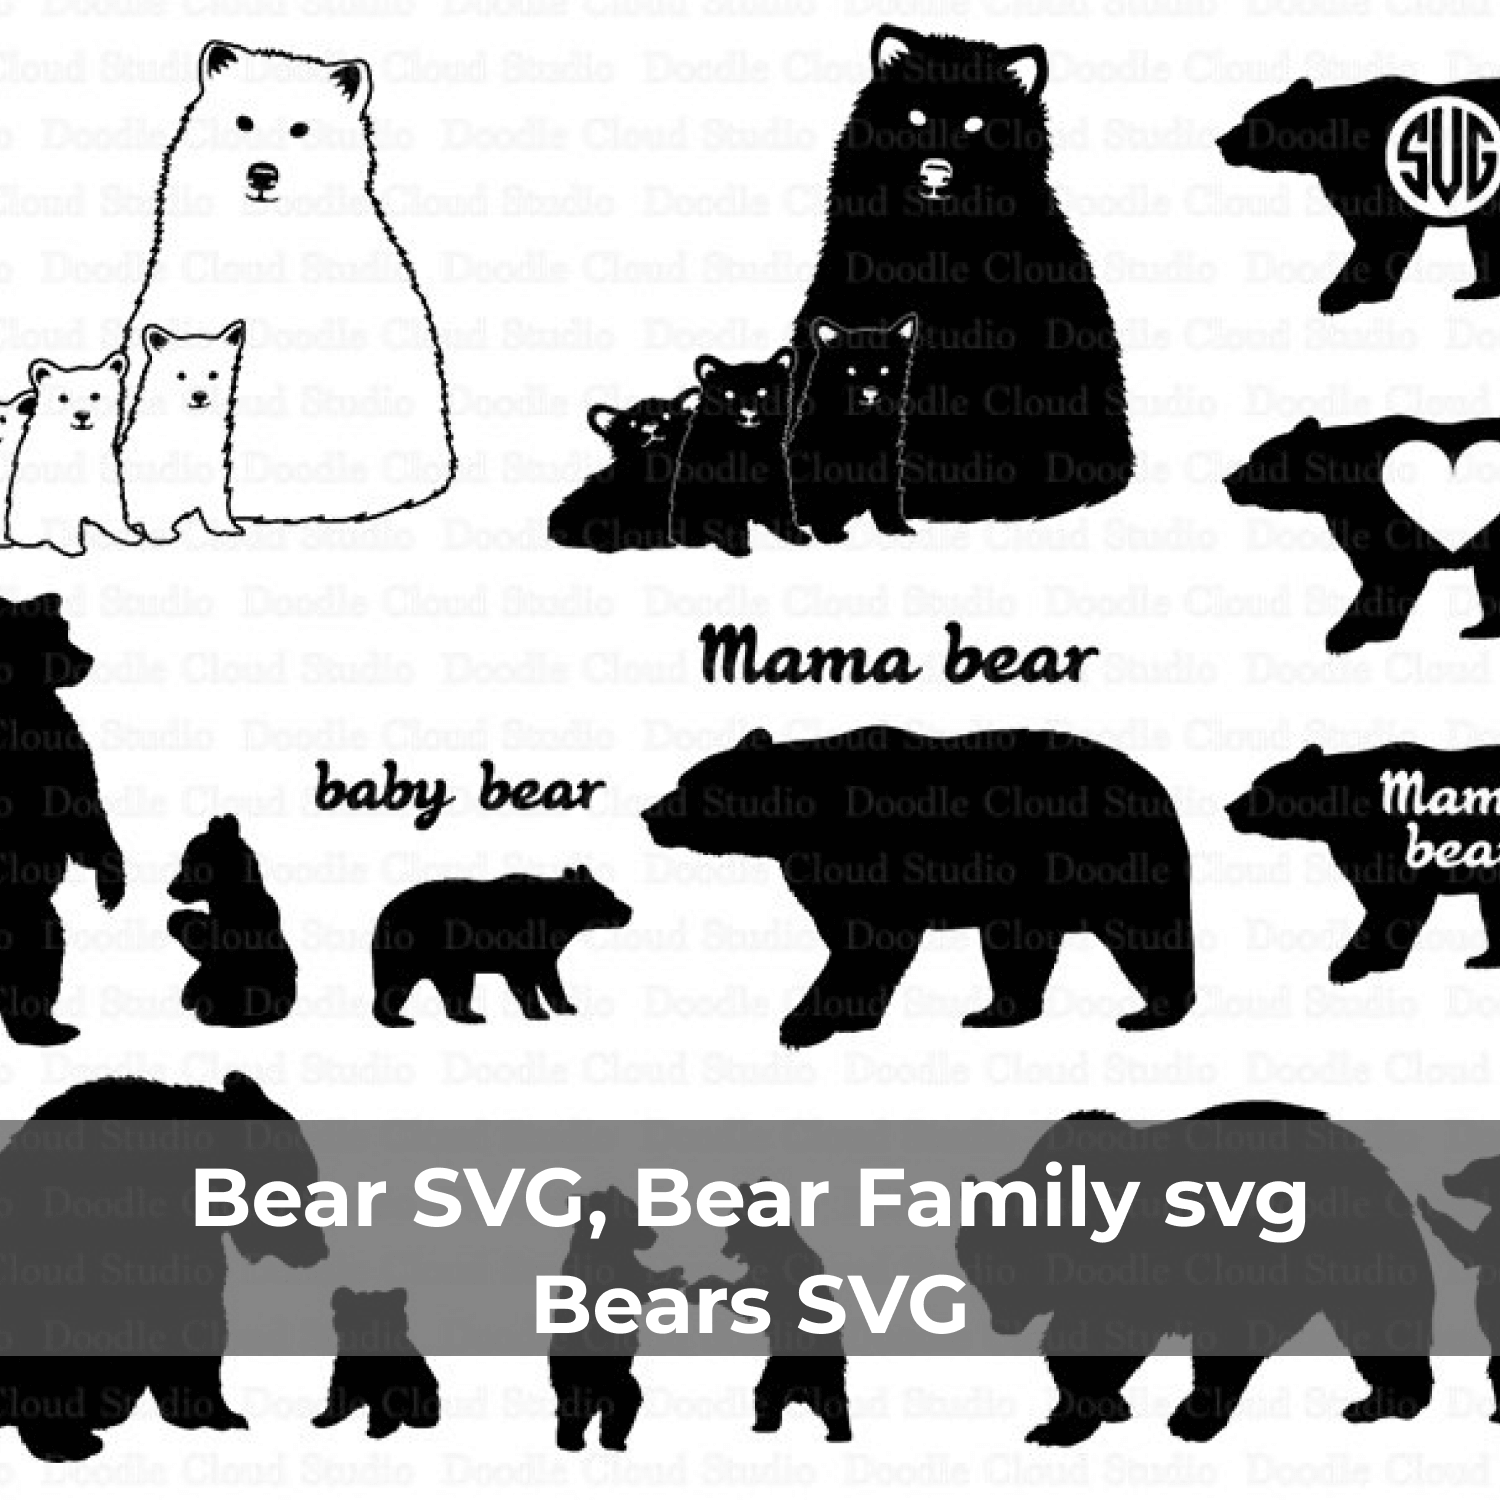 Mama bear and baby bear.